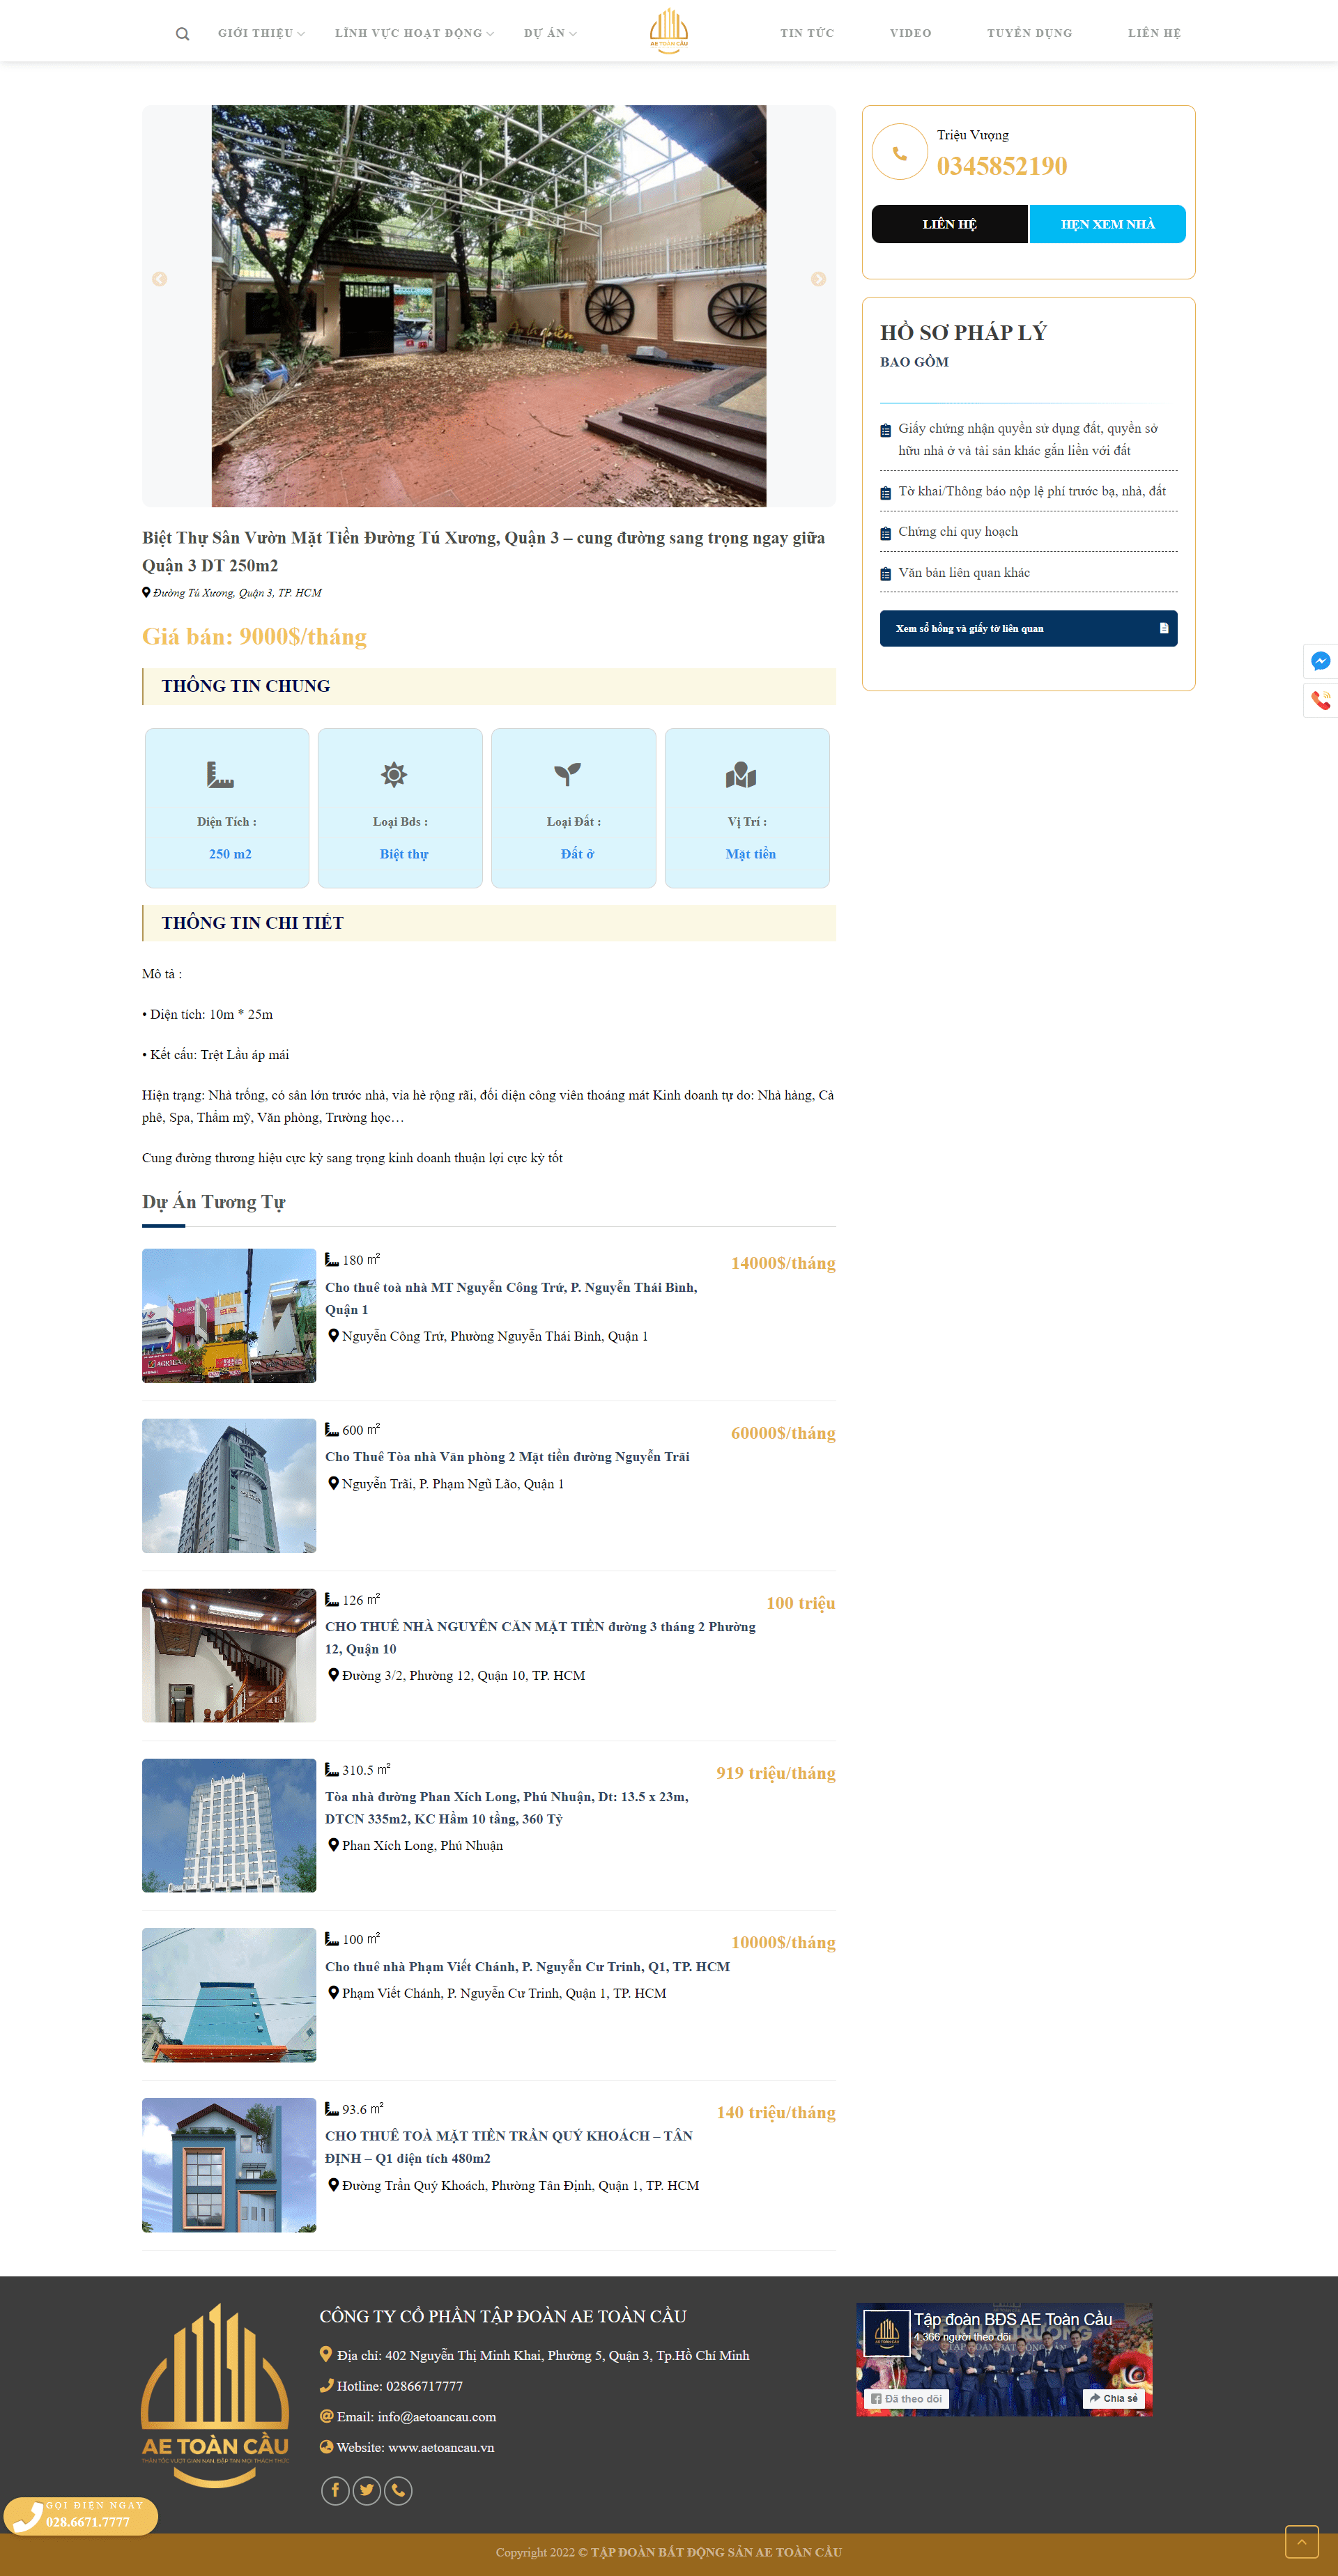 Mẫu website bất động sản cho tập đoàn, công ty AE